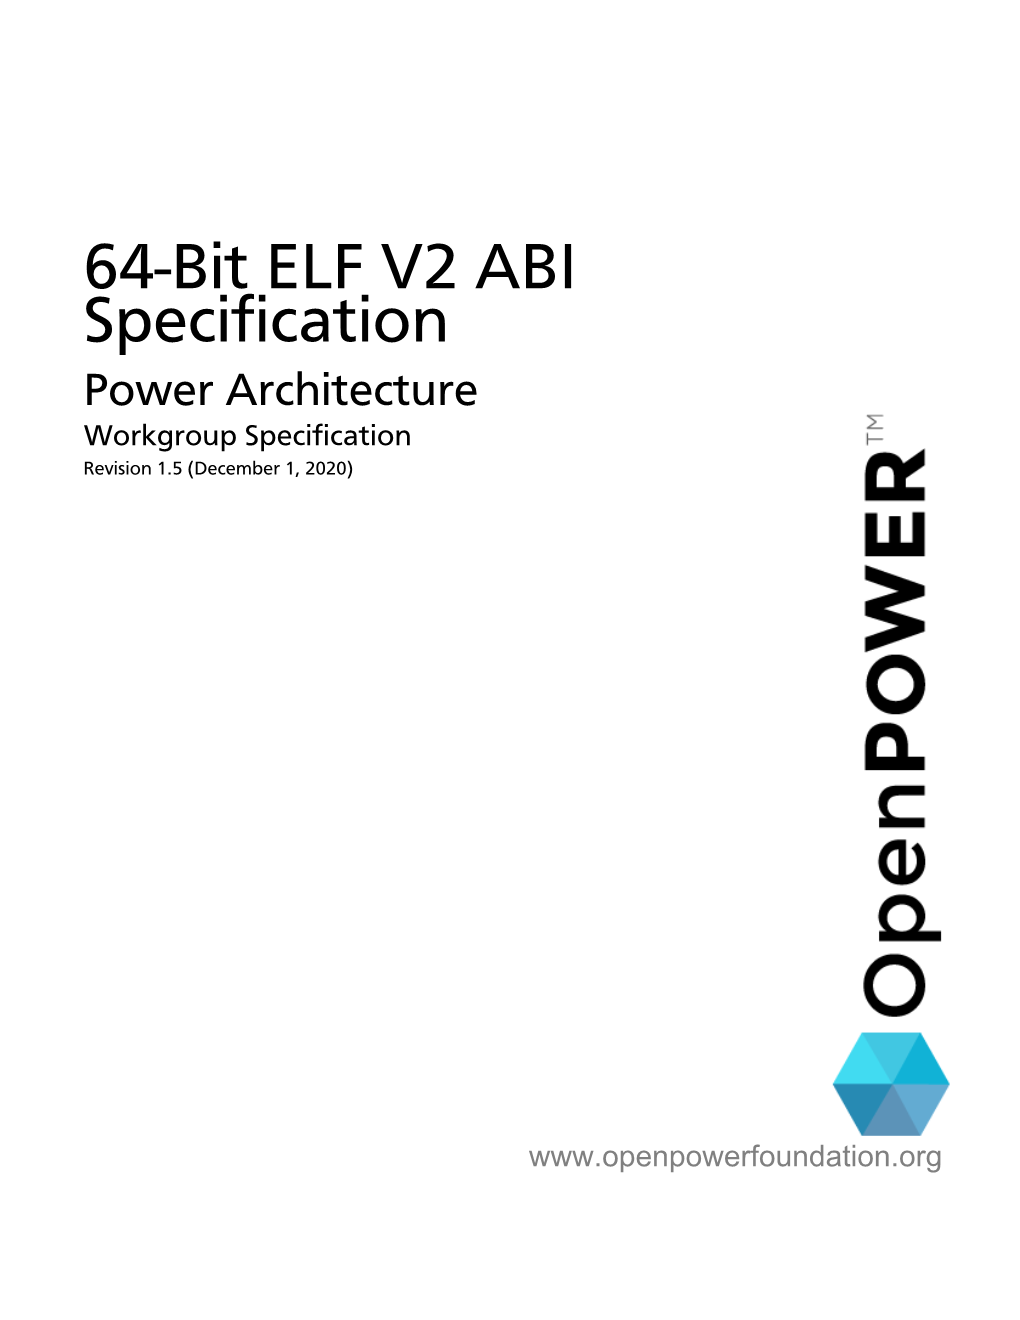 64-Bit ELF V2 ABI Specification December 1, 2020 Revision 1.5